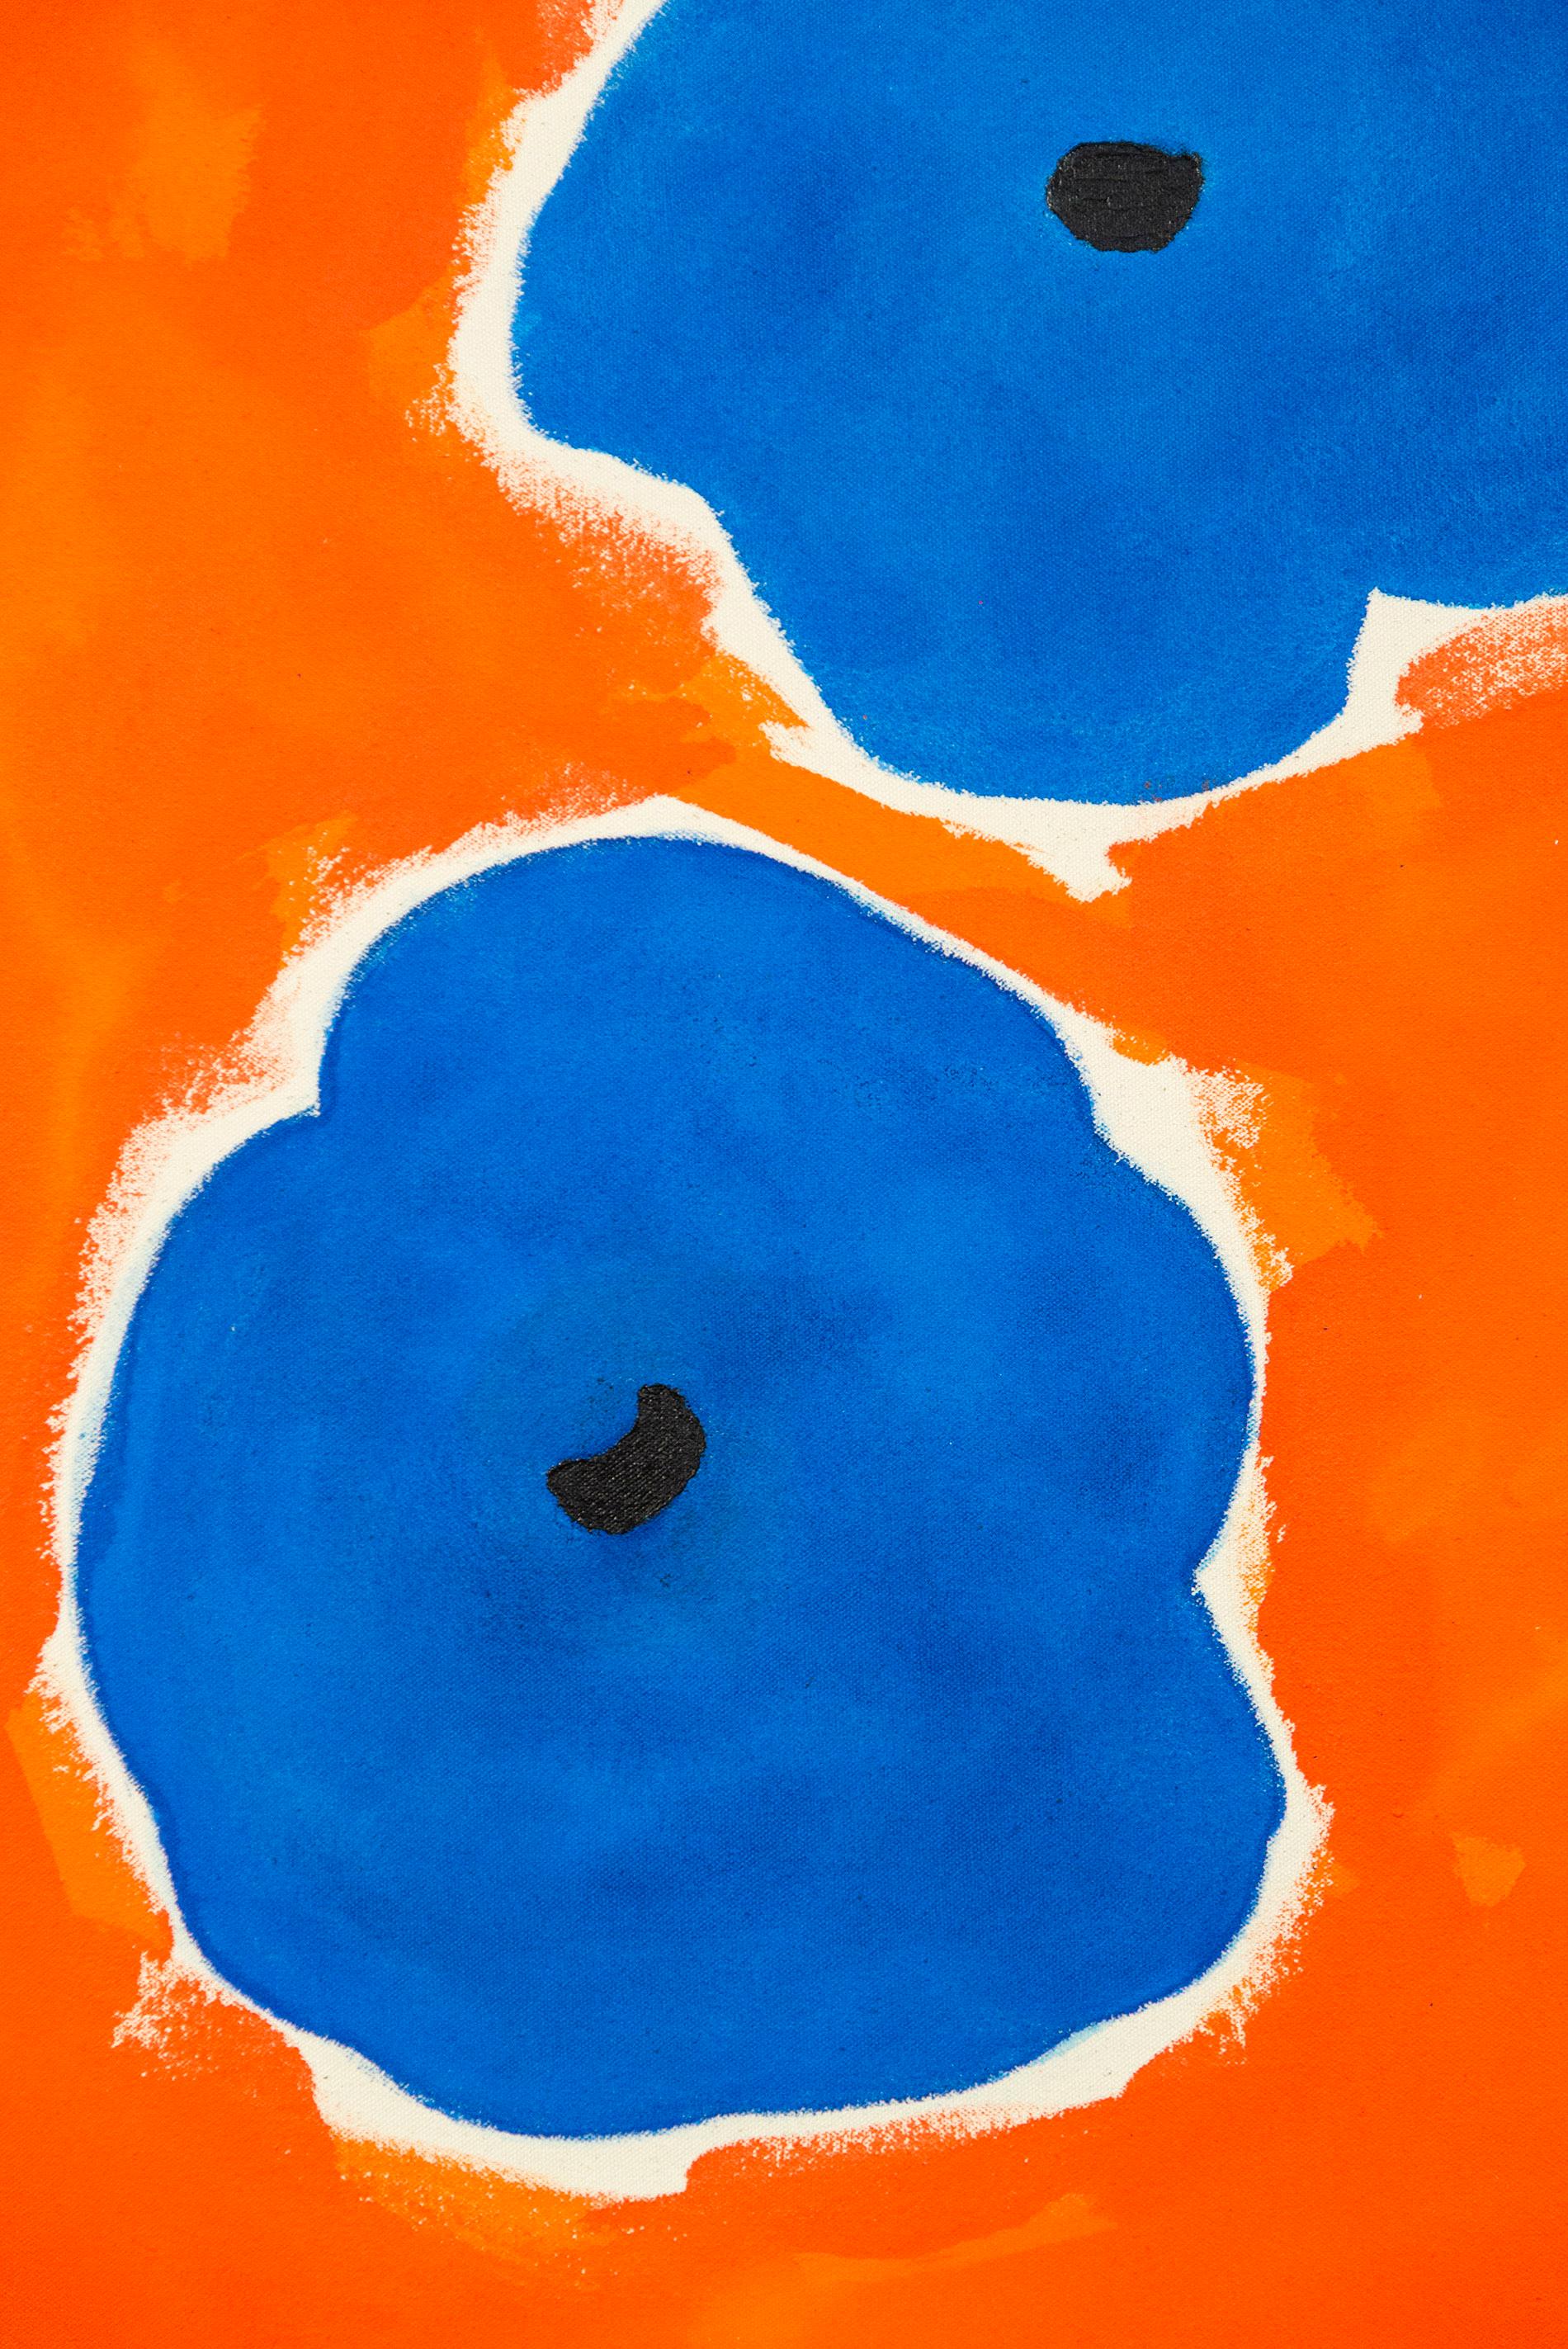 Cette peinture joyeuse et colorée est l'œuvre de l'un des meilleurs paysagistes canadiens, Pat Service.

Ici, le jardinier passionné utilise des couleurs audacieuses - bleu royal, noir et blanc sur un fond rouge vif - et des formes minimalistes pour